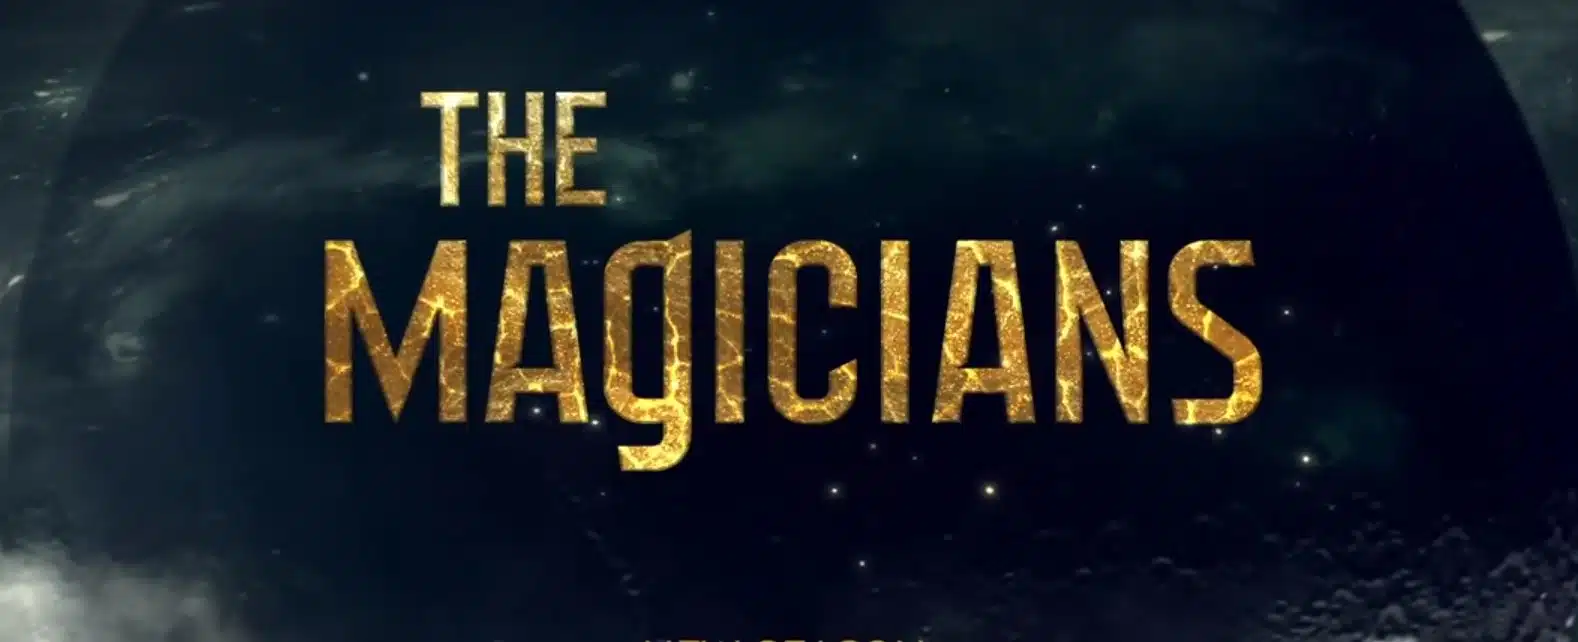 Il 19 gennaio 2019 ha debuttato negli Stati Uniti un nuovo ciclo di episodi di una serie tv di grande successo appartenente al genere fantasy: stiamo parlando di The Magicians